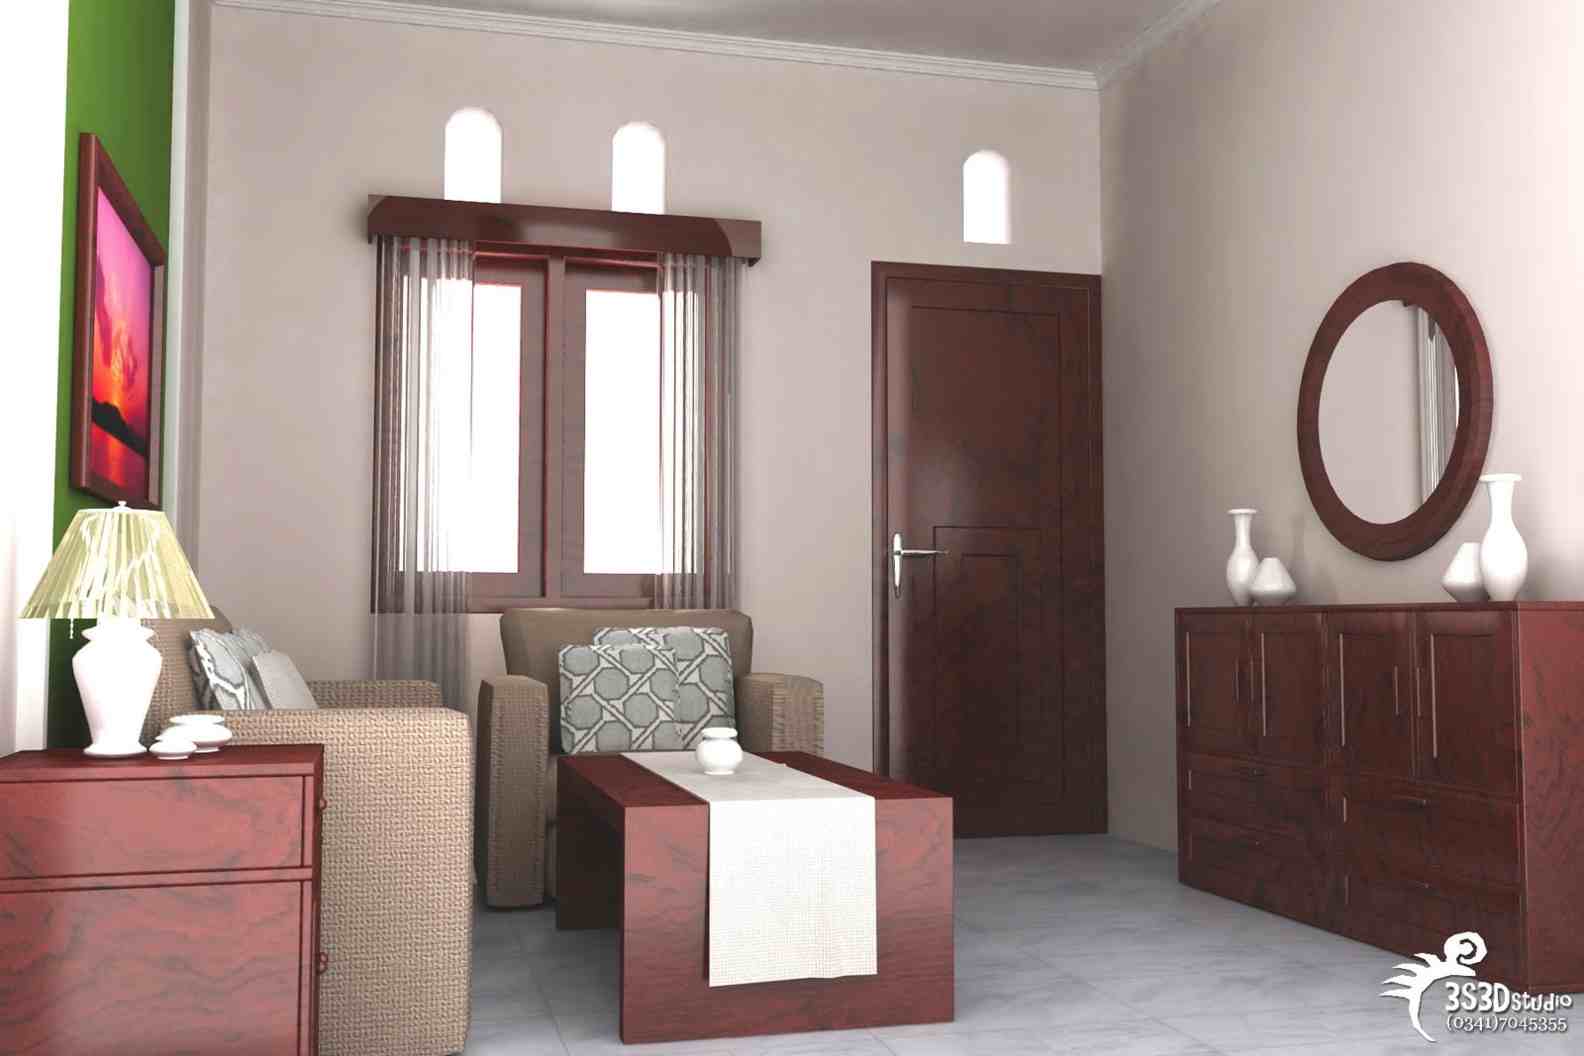 Contoh Desain Interior Rumah Minimalis Type 21 Jpg 1584 1056 Desain Kamar Desain Interior Interior